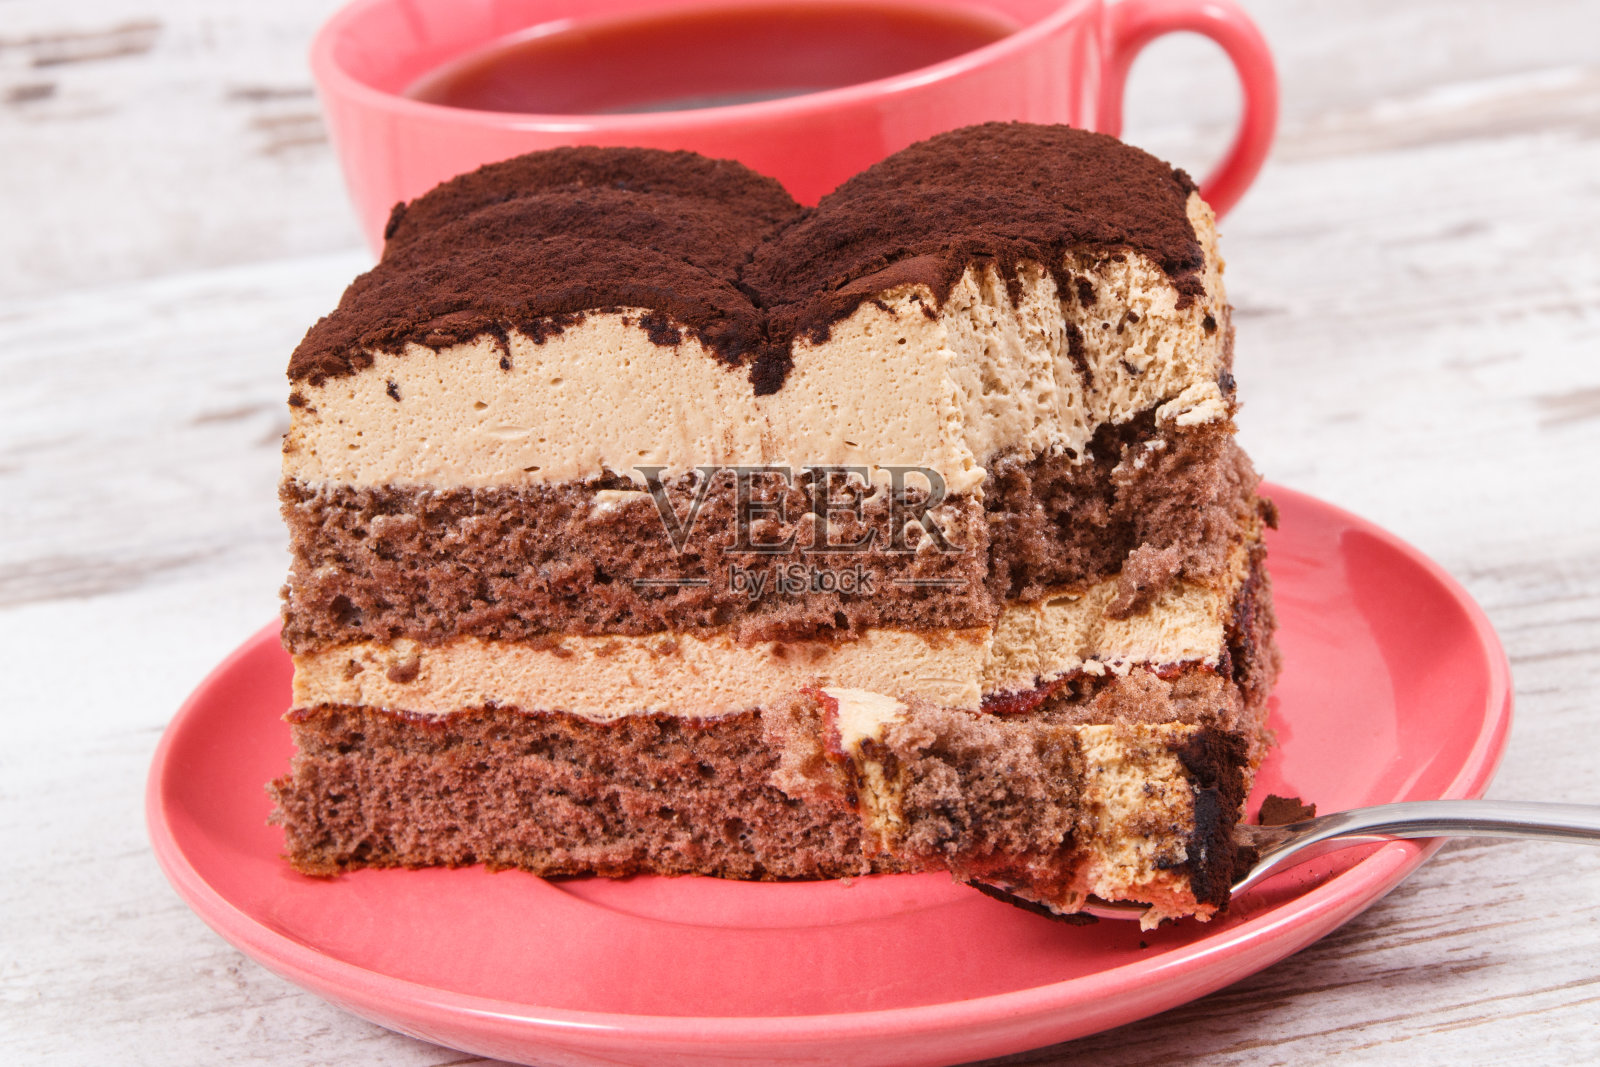 奶油提拉米苏蛋糕有不同的层次和黑咖啡。美味的庆祝甜点照片摄影图片